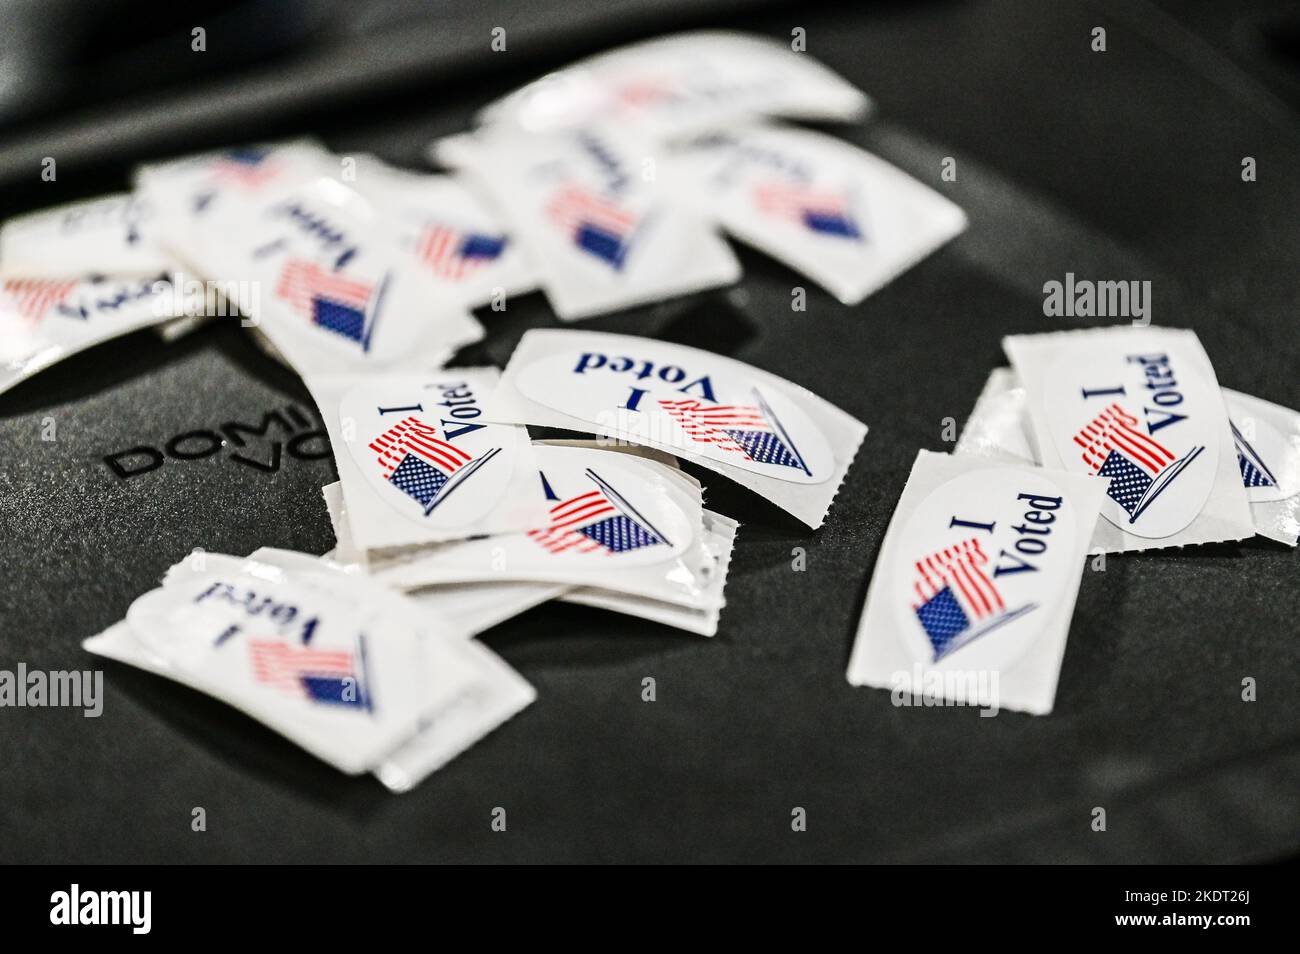 Les autocollants « J'ai voté » se trouvent sur une machine de tabulation des votes du Dominion lors des élections de mi-mandat de 2022 à Montpelier, VT, États-Unis. Banque D'Images